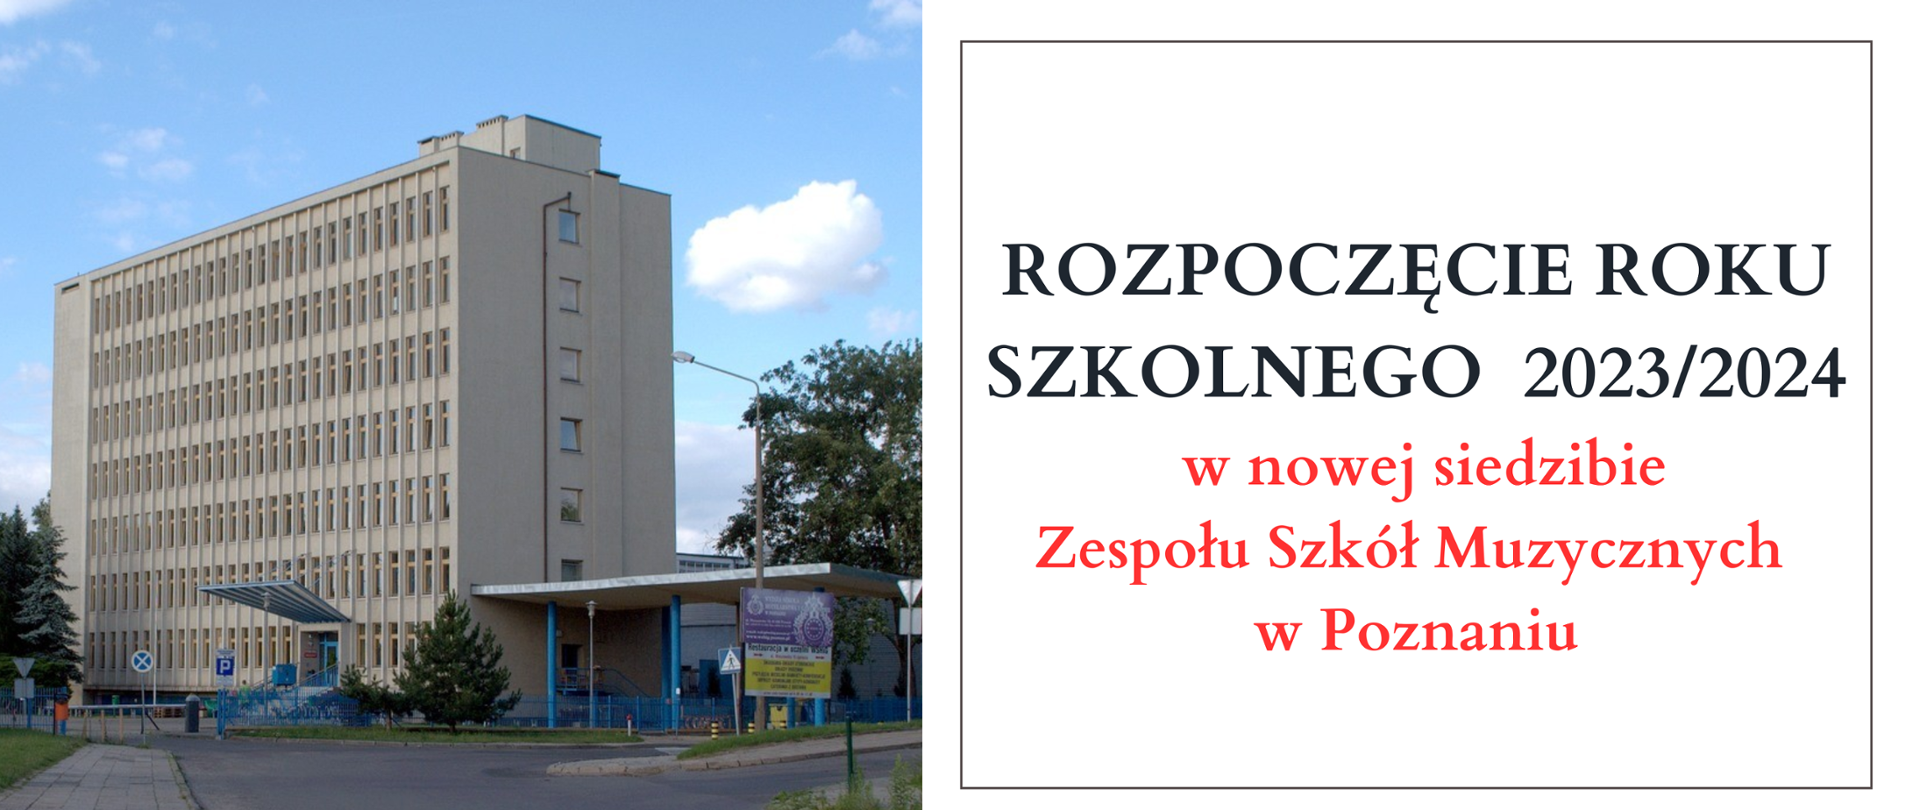 Zdjęcie budynku przy ul. Nieszawskiej 12a z prawej strony tekst: "Rozpoczęcie roku szkolnego 2023/2024 w nowej siedzibie Zespołu Szkół Muzycznych w Poznaniu